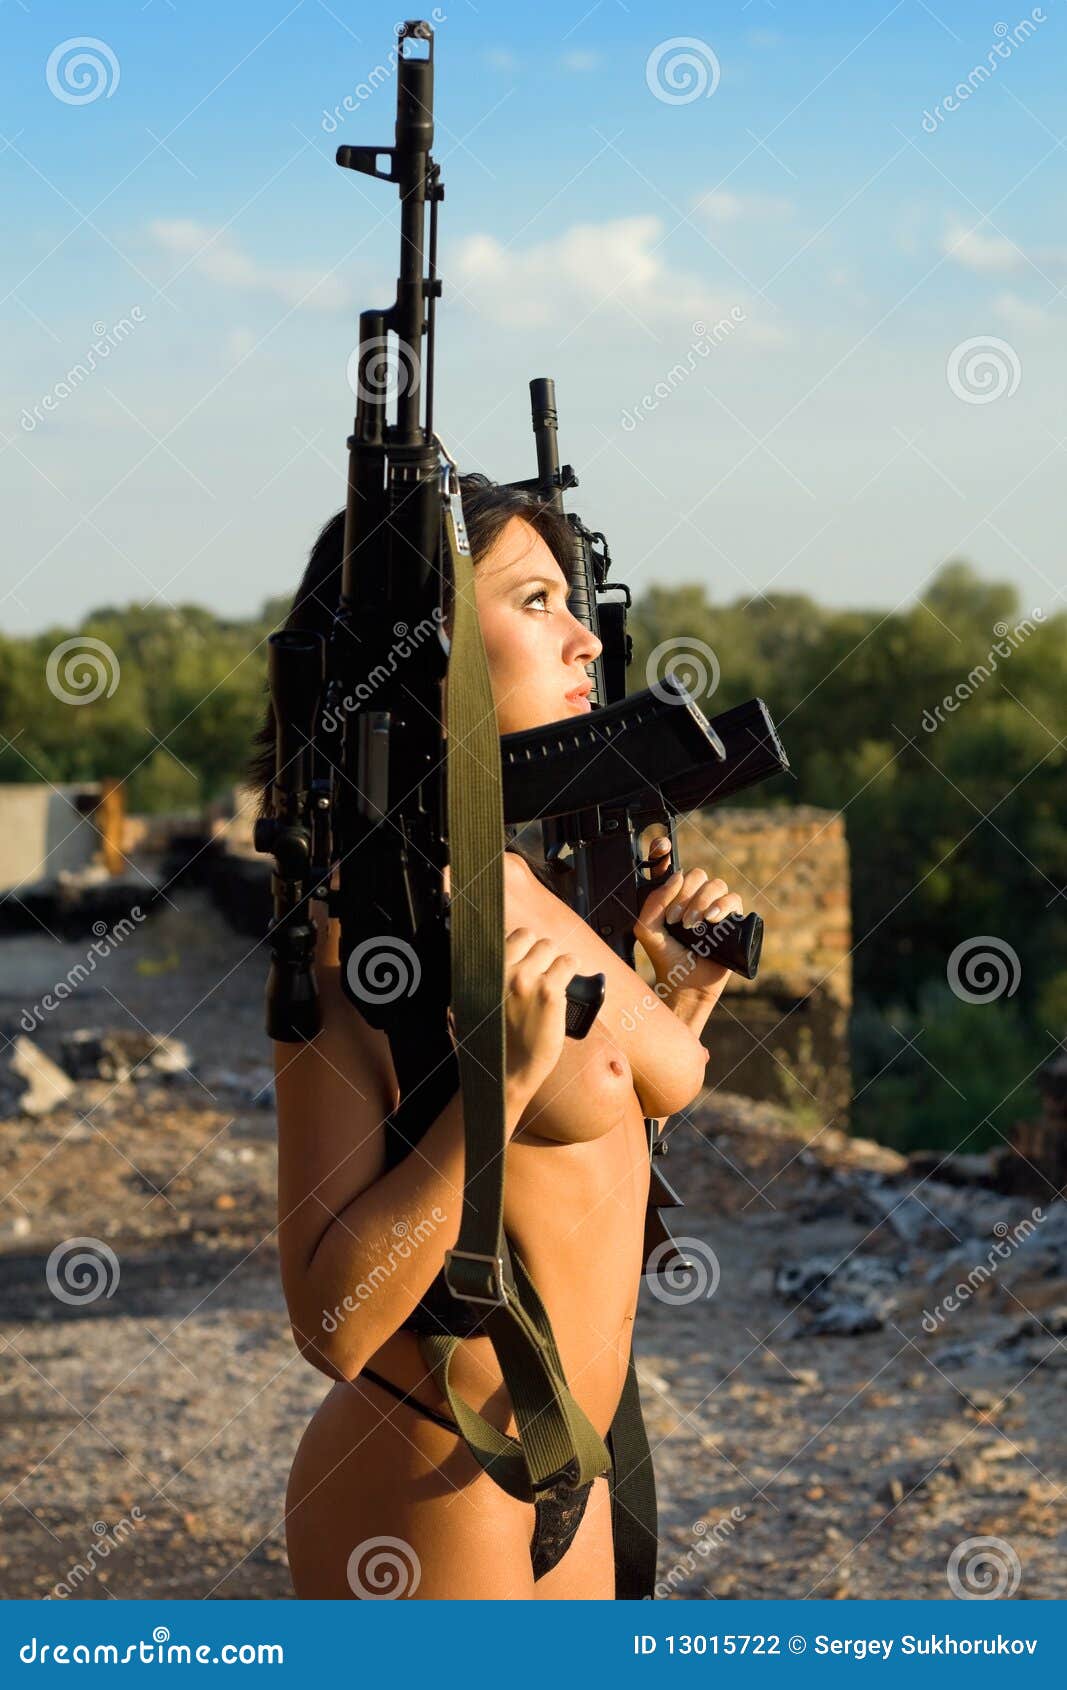 Best of Naked women guns